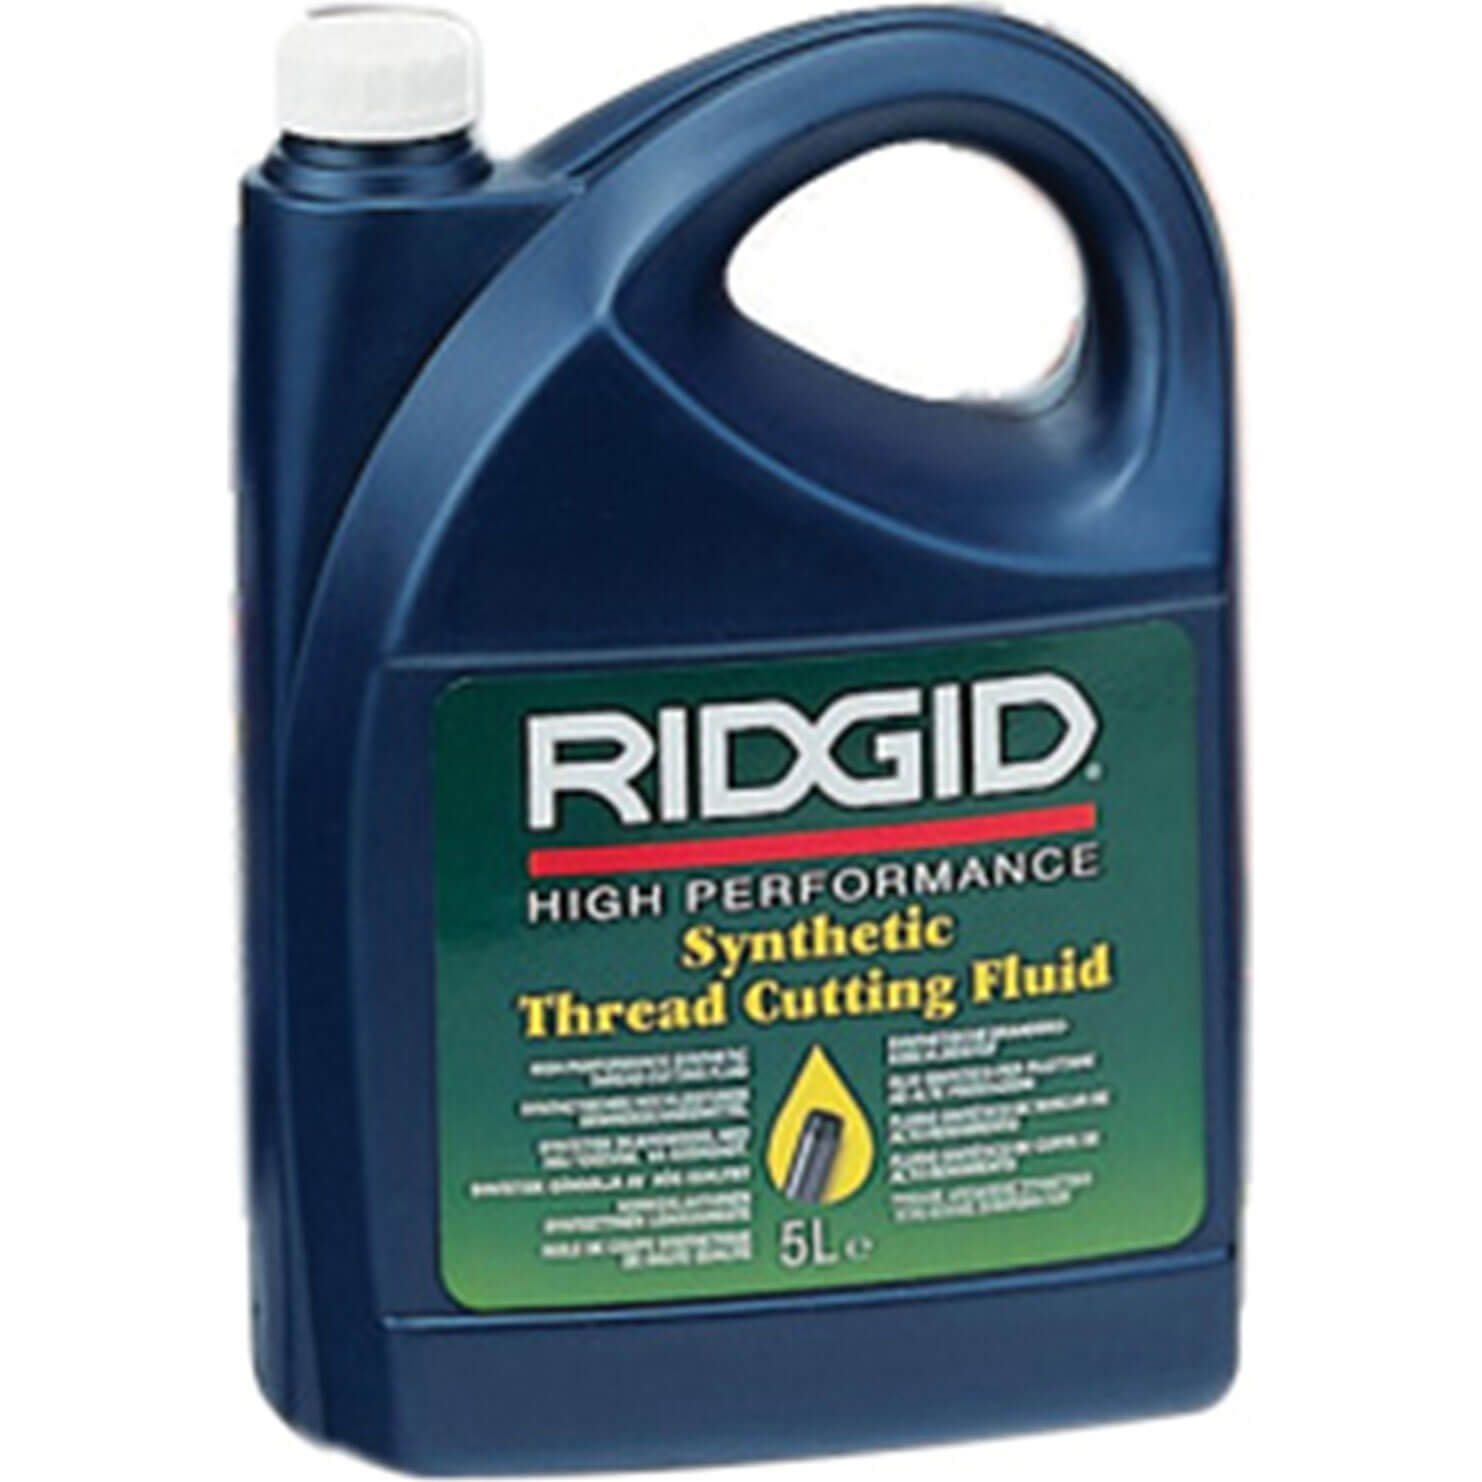 Image of Ridgid Mineral Thread Cutting Oil 5l